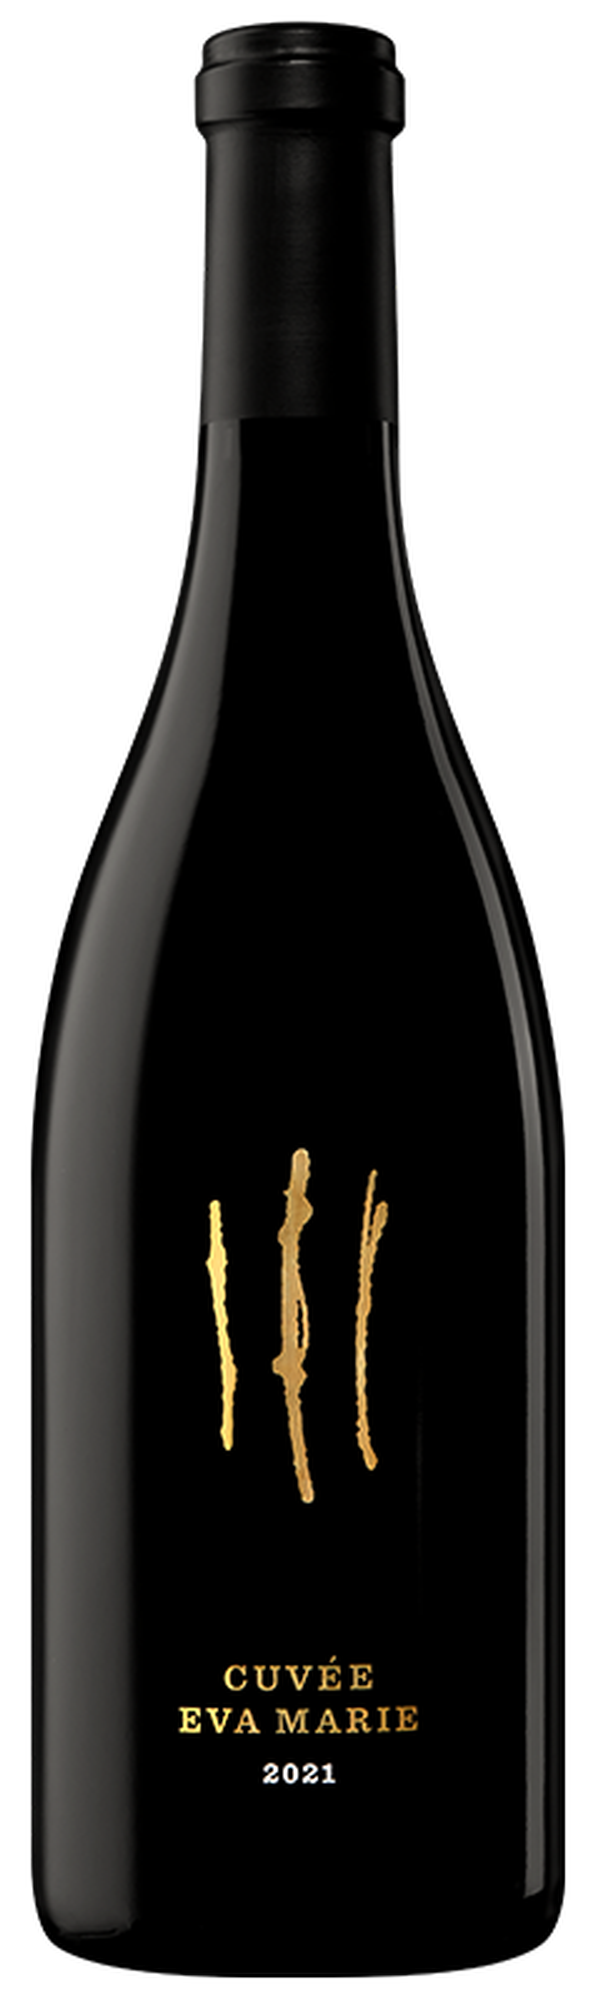 2021 Cuvée Eva Marie Pinot Noir 1.5L